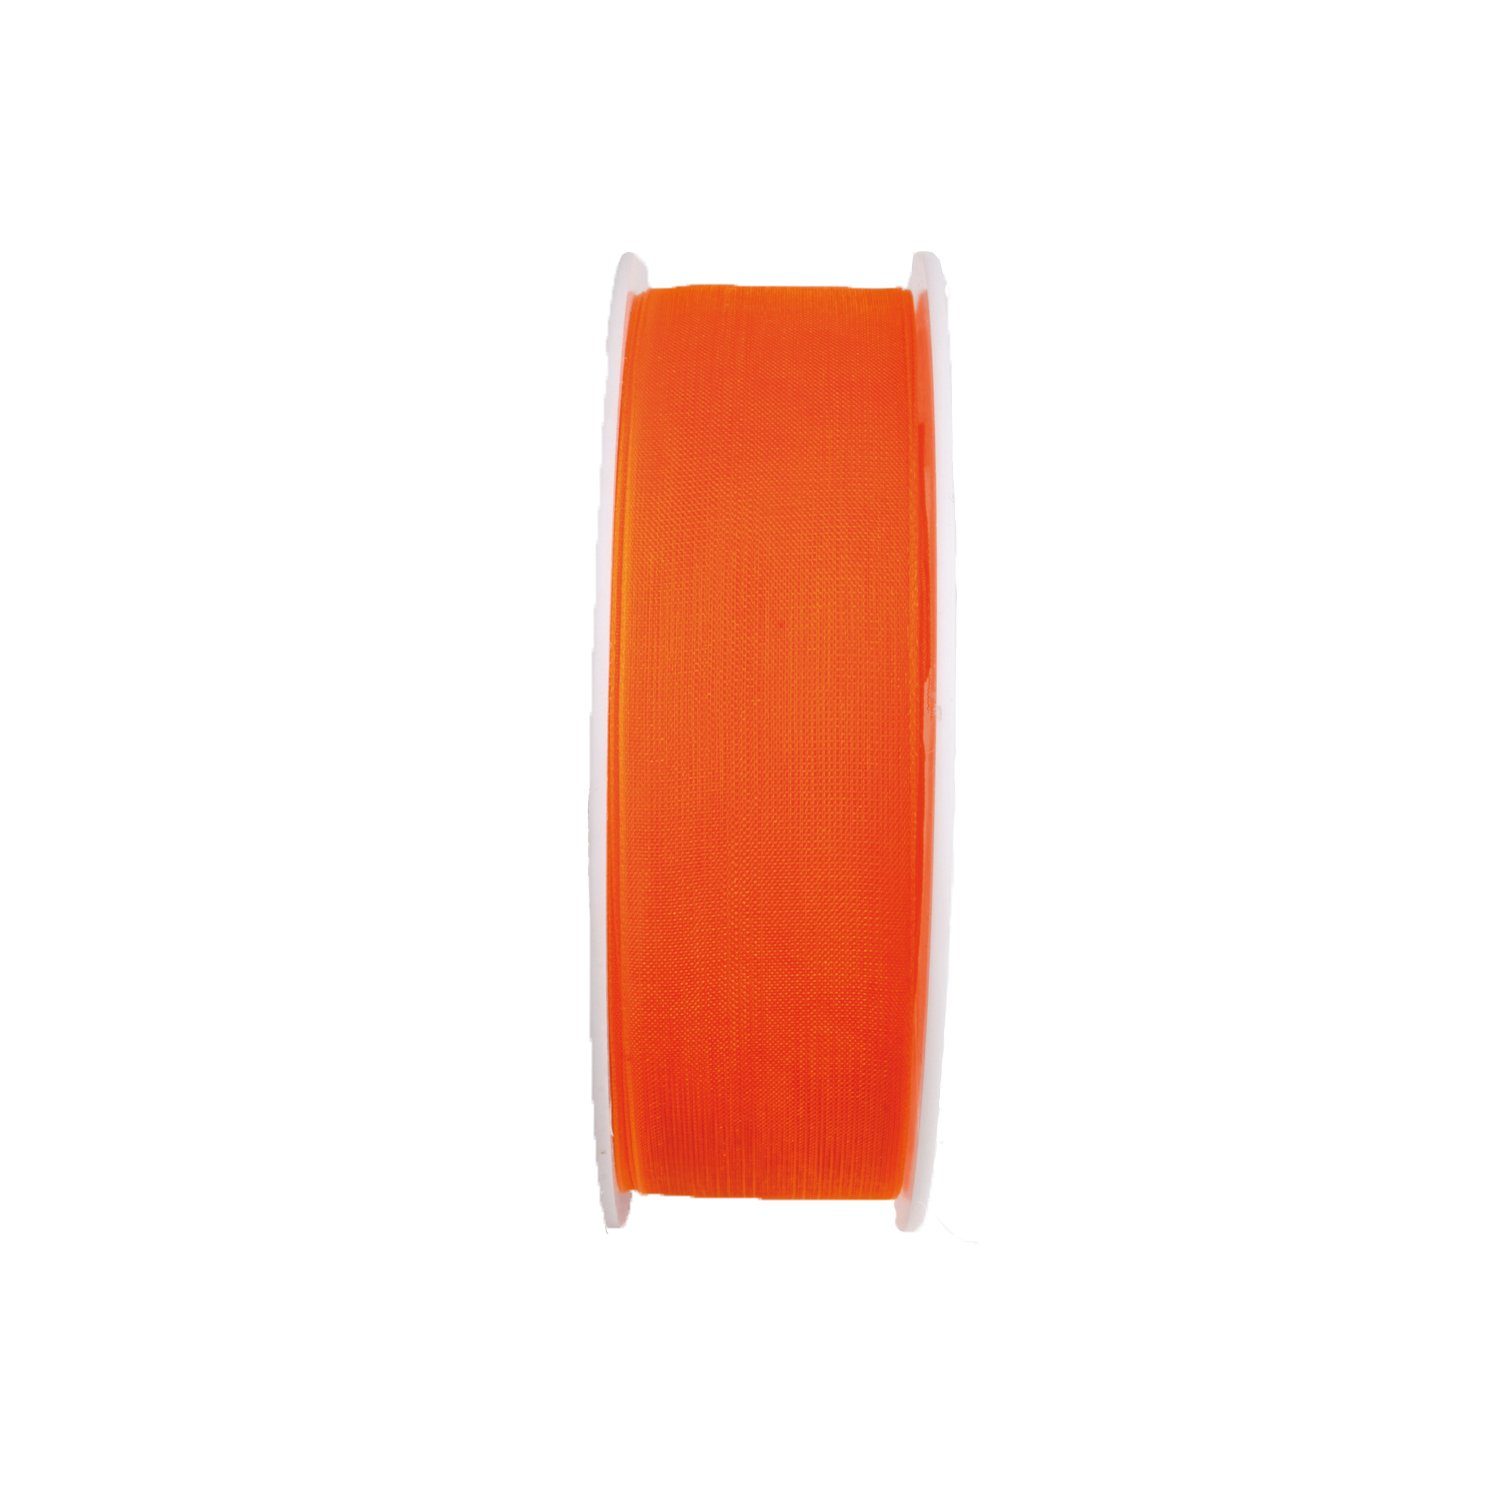 Maar & Pick KG Beschriftungsband Chiffon - orange - 25 mm - 25 m